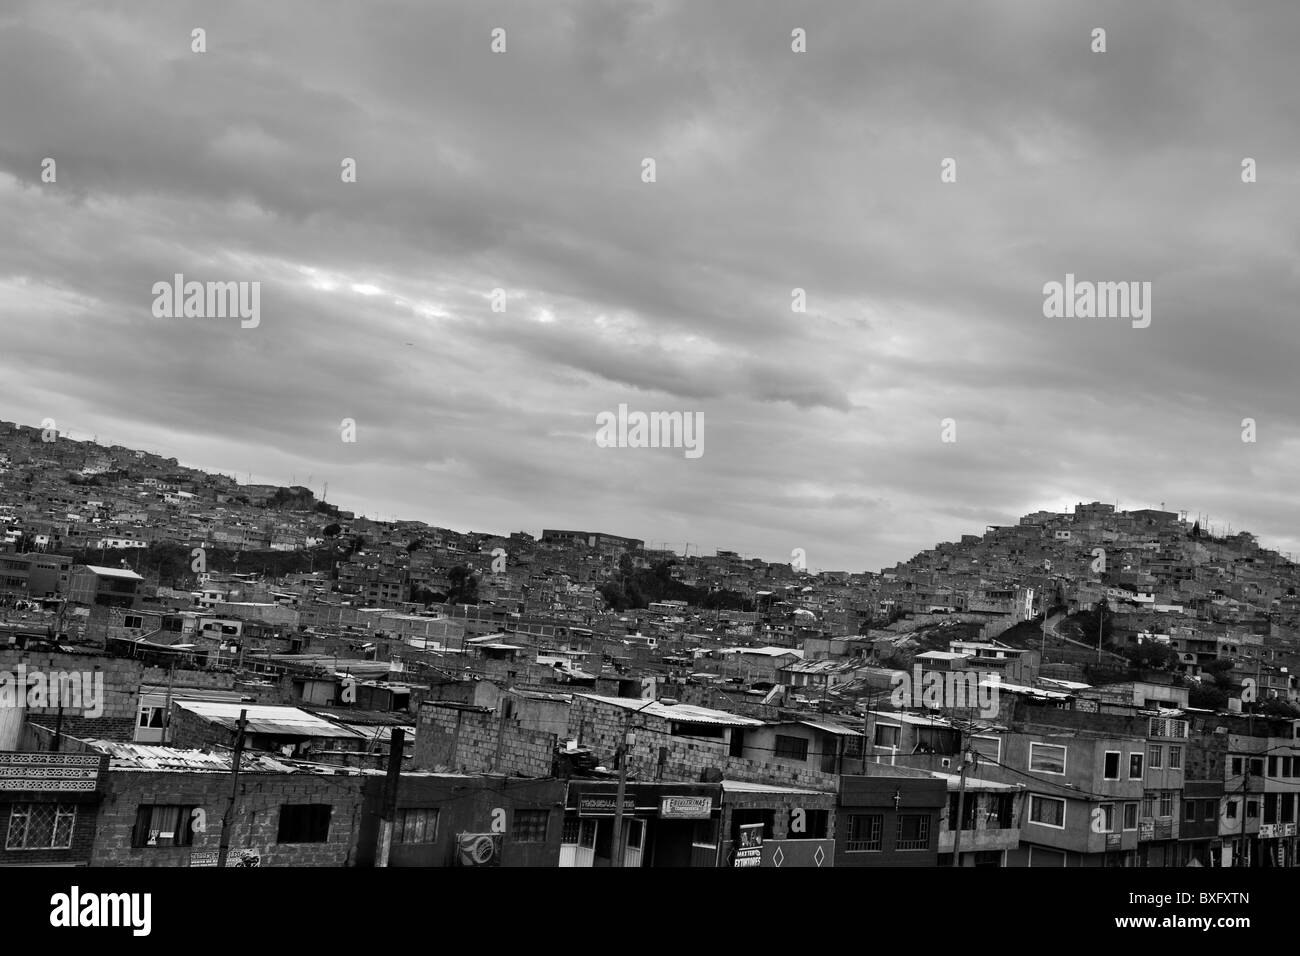 Ciudad Bolívar, ein Elendsviertel in Bogota, wo vertriebene Menschen aus allen Teilen des Landes leben, Kolumbien. Stockfoto